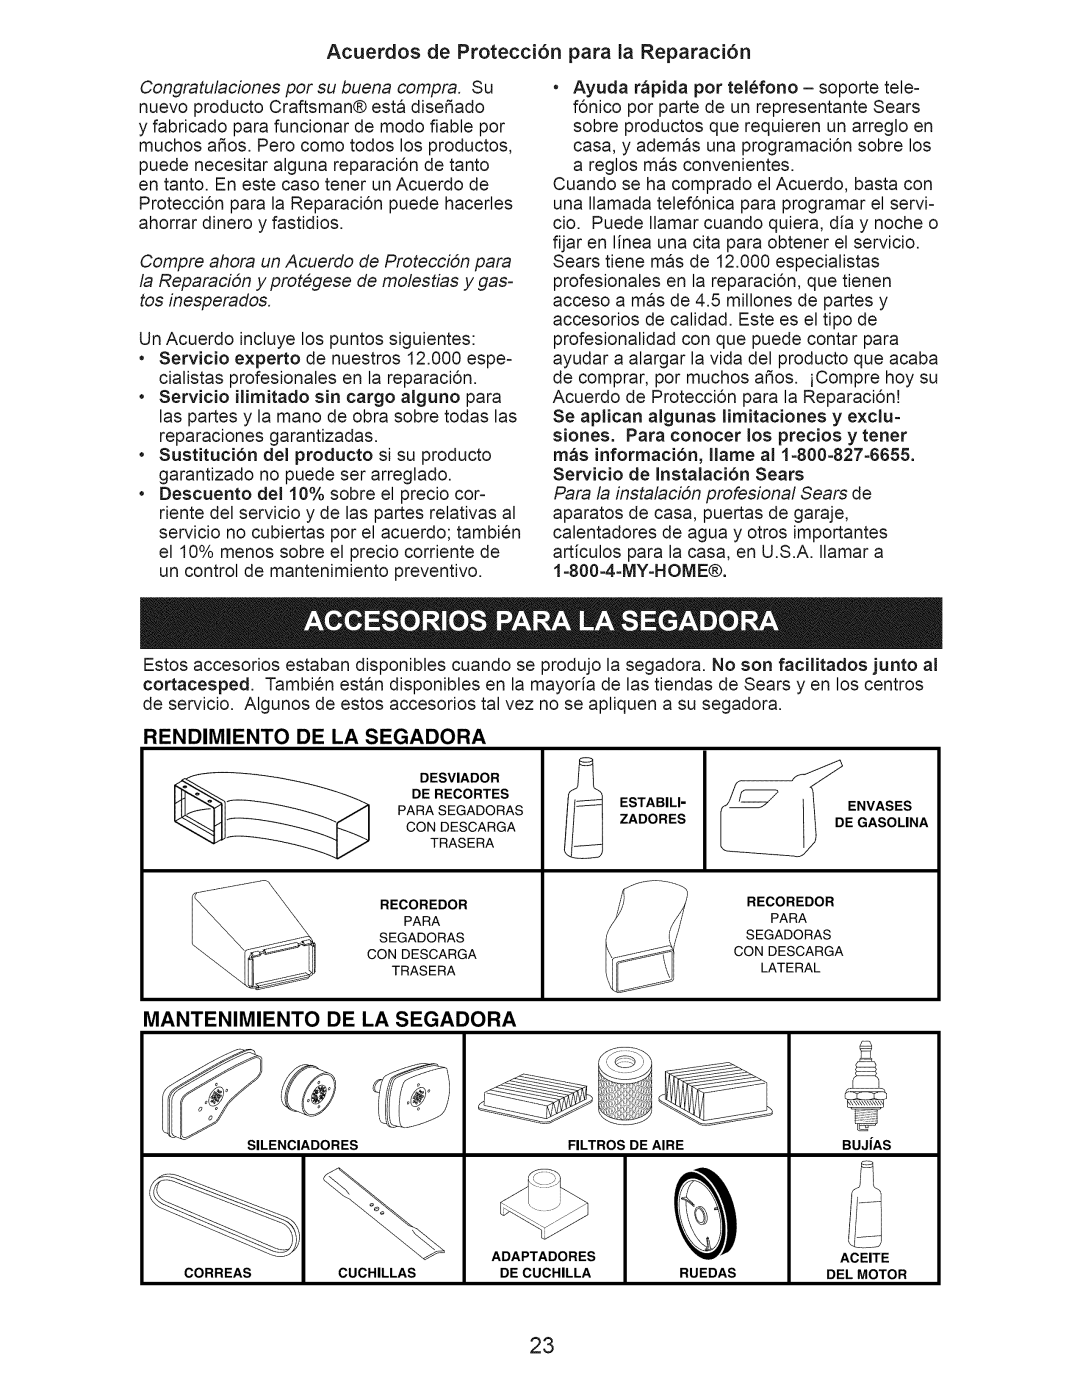 Craftsman 917.376400 owner manual Acuerdos de Protecci6n para la Reparaci6n, Rendimiento, De La Segadora, Mantenimiento 